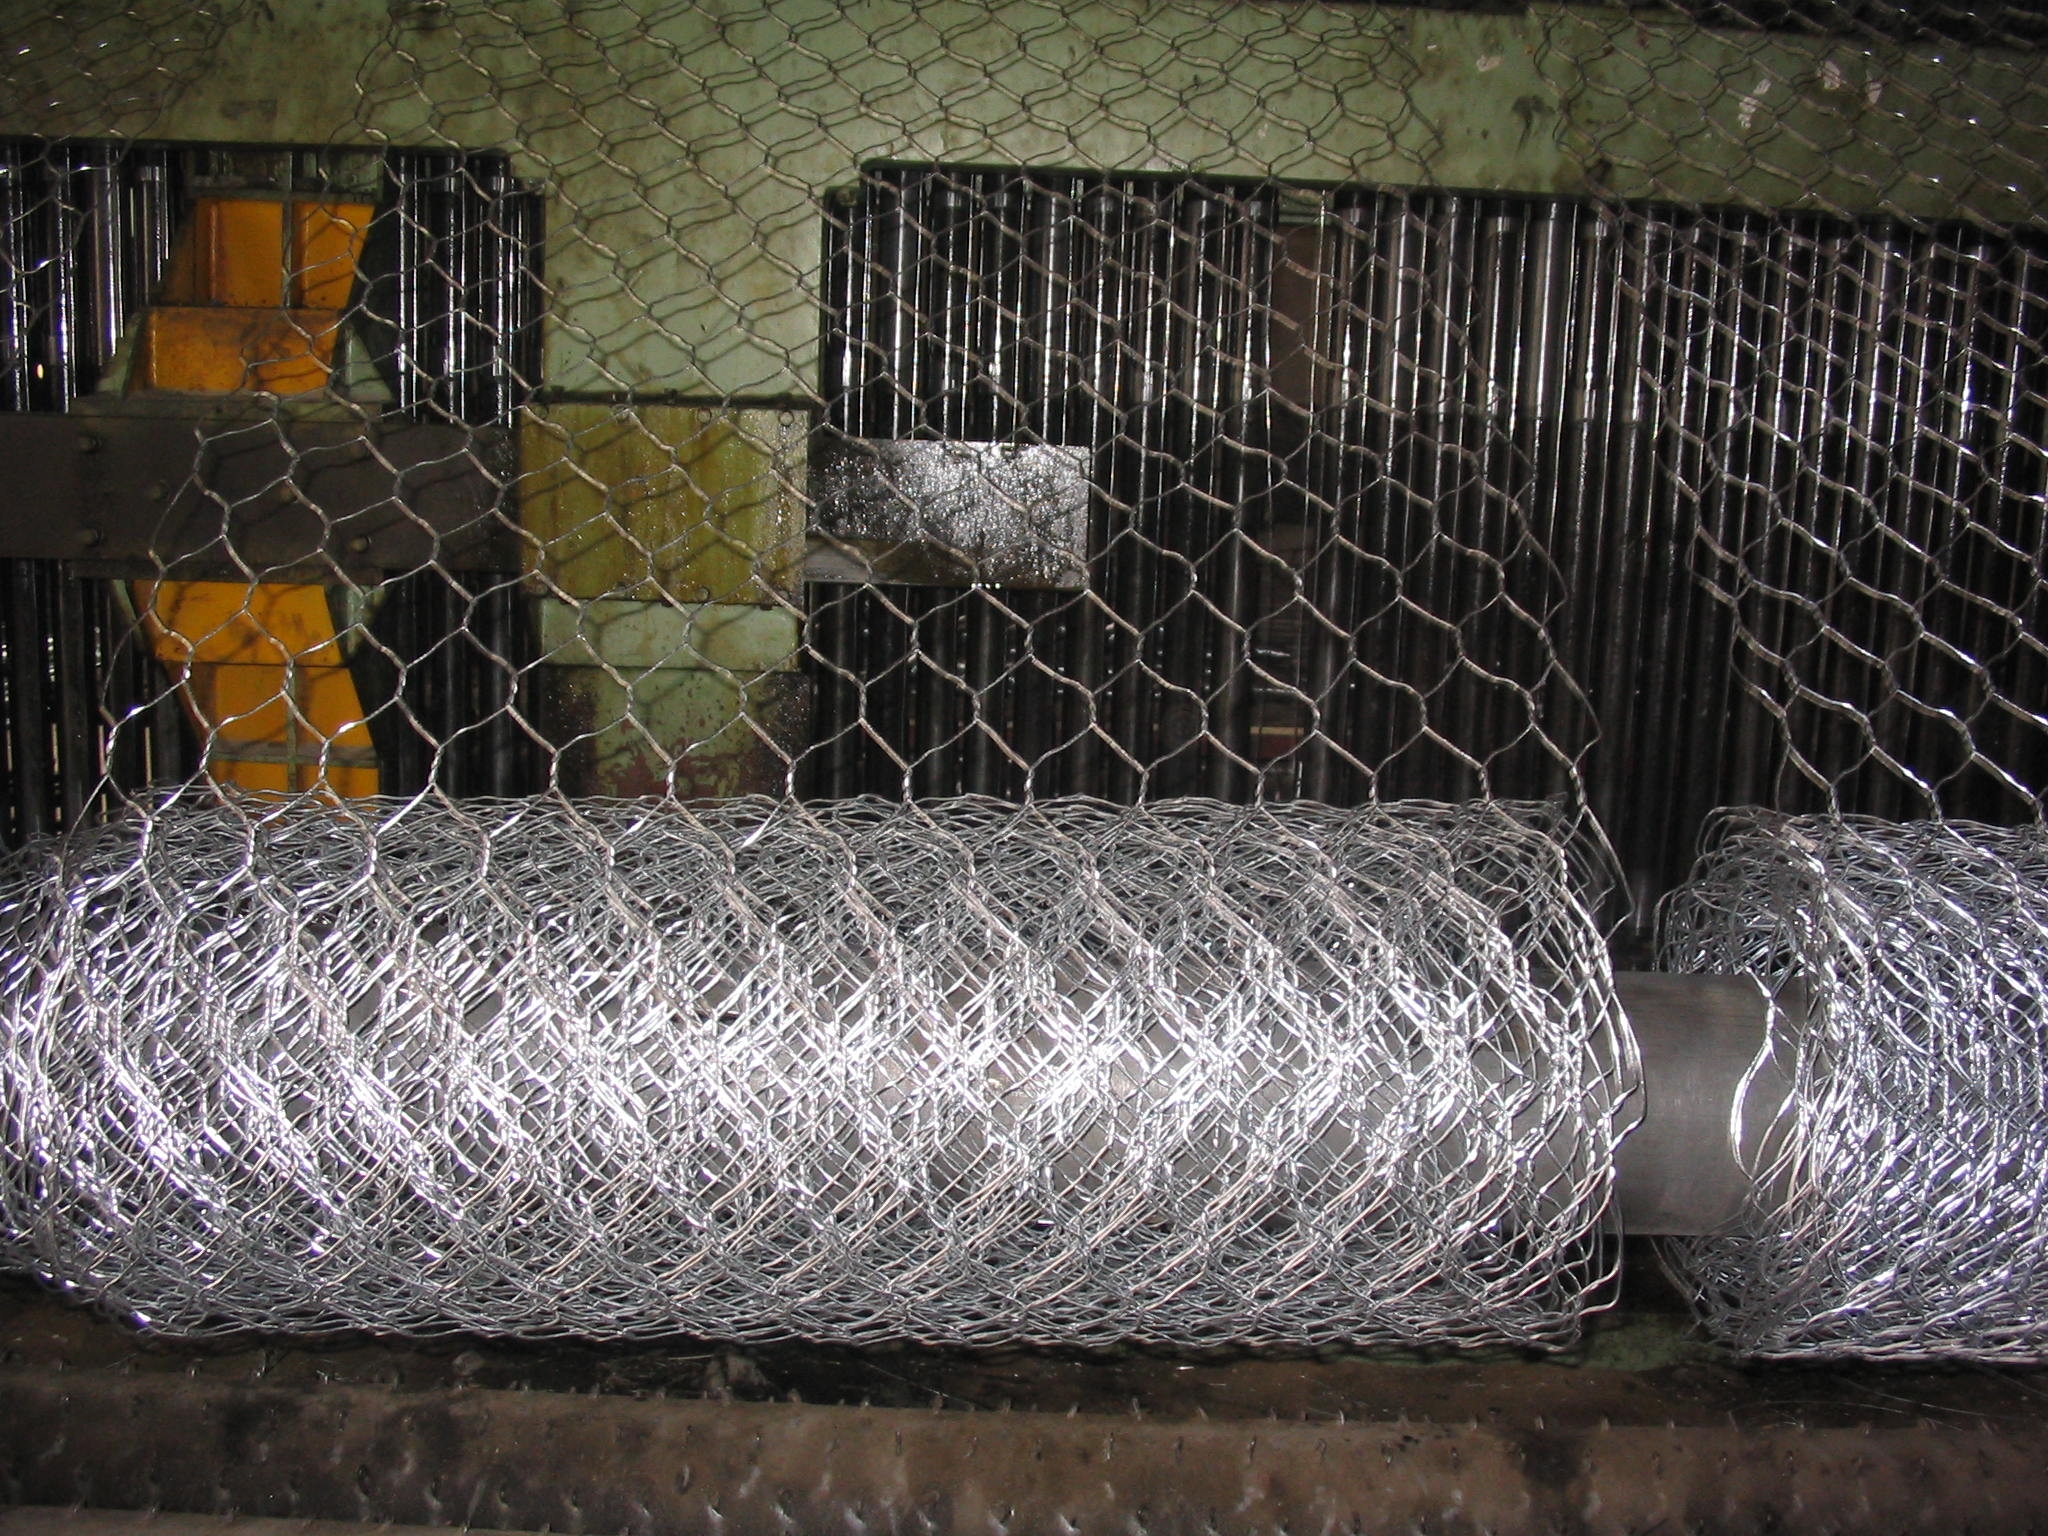 hexagonal wire netting